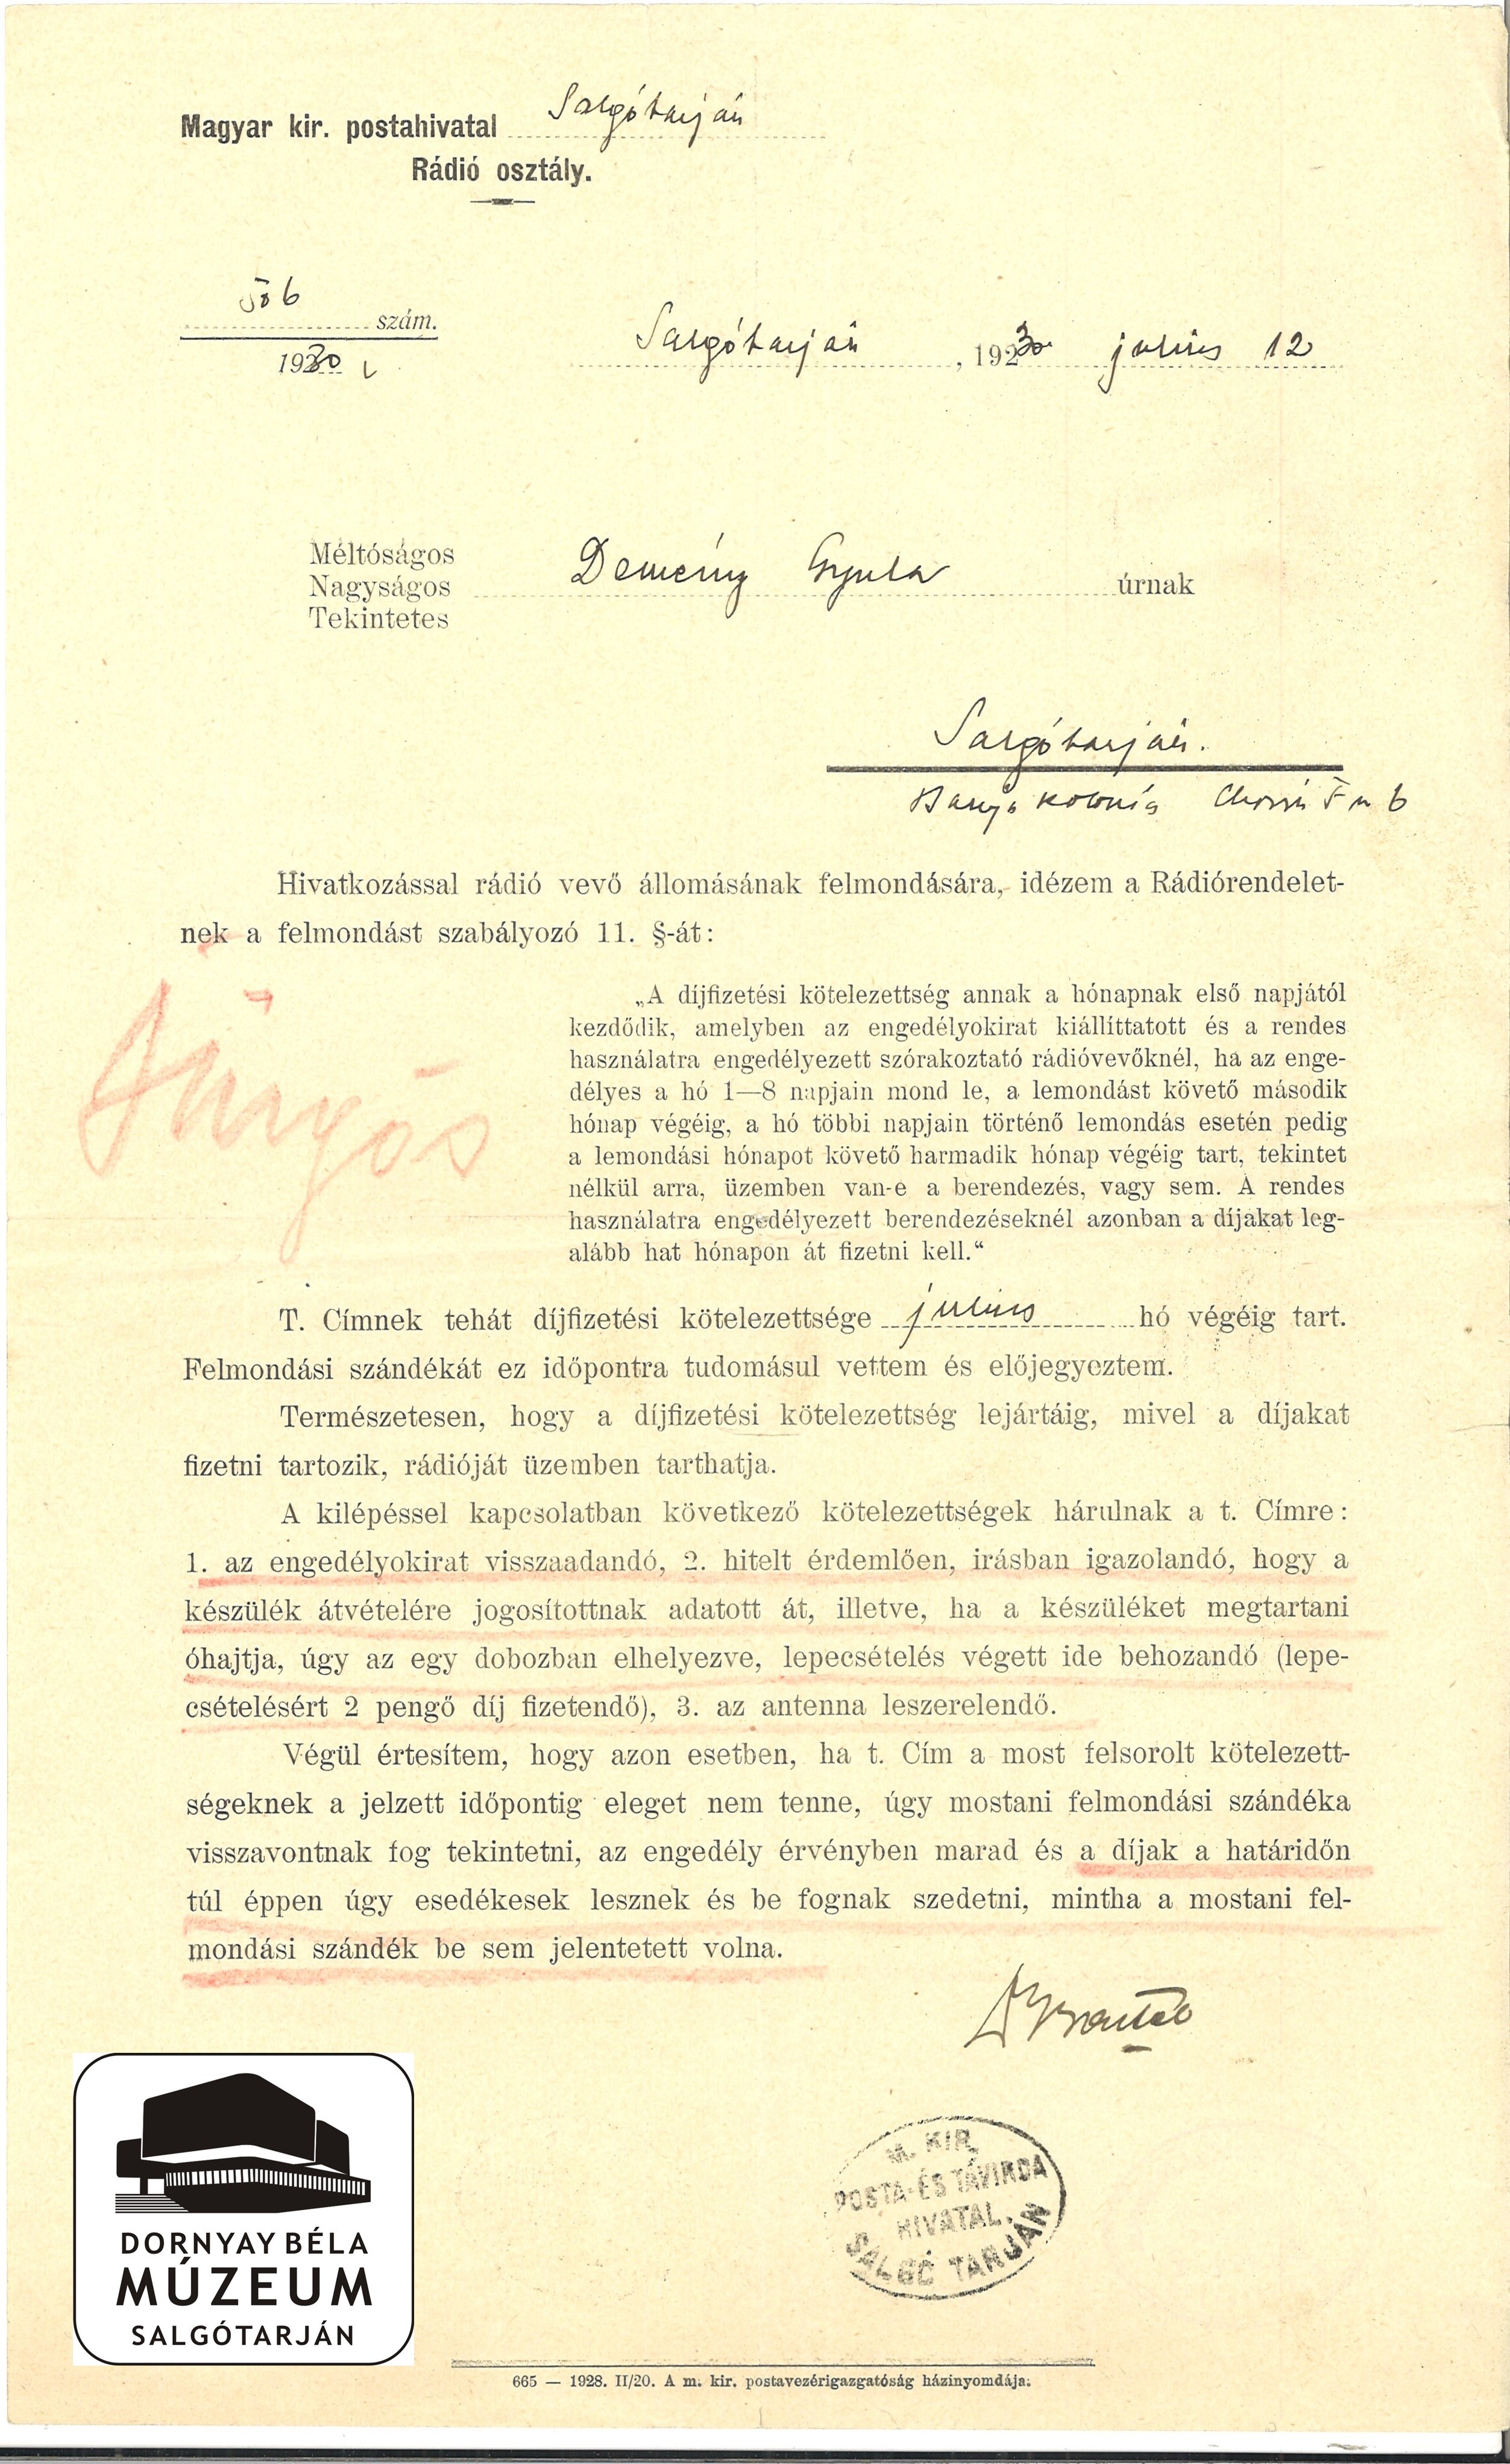 Demény Gyula rádió vevő állomásának felmondása (Dornyay Béla Múzeum, Salgótarján CC BY-NC-SA)